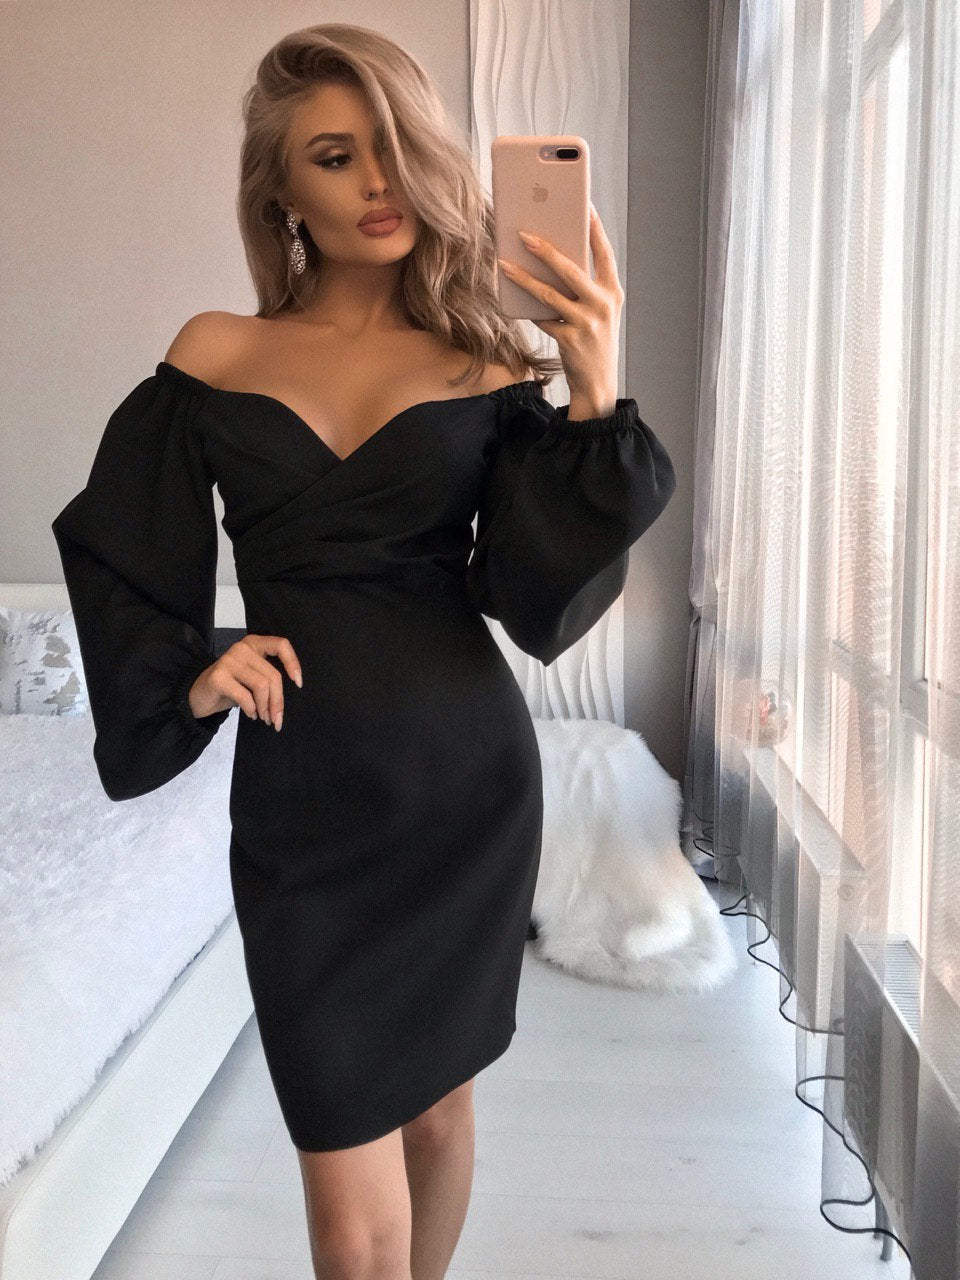 a woman taking a selfie in a black dress